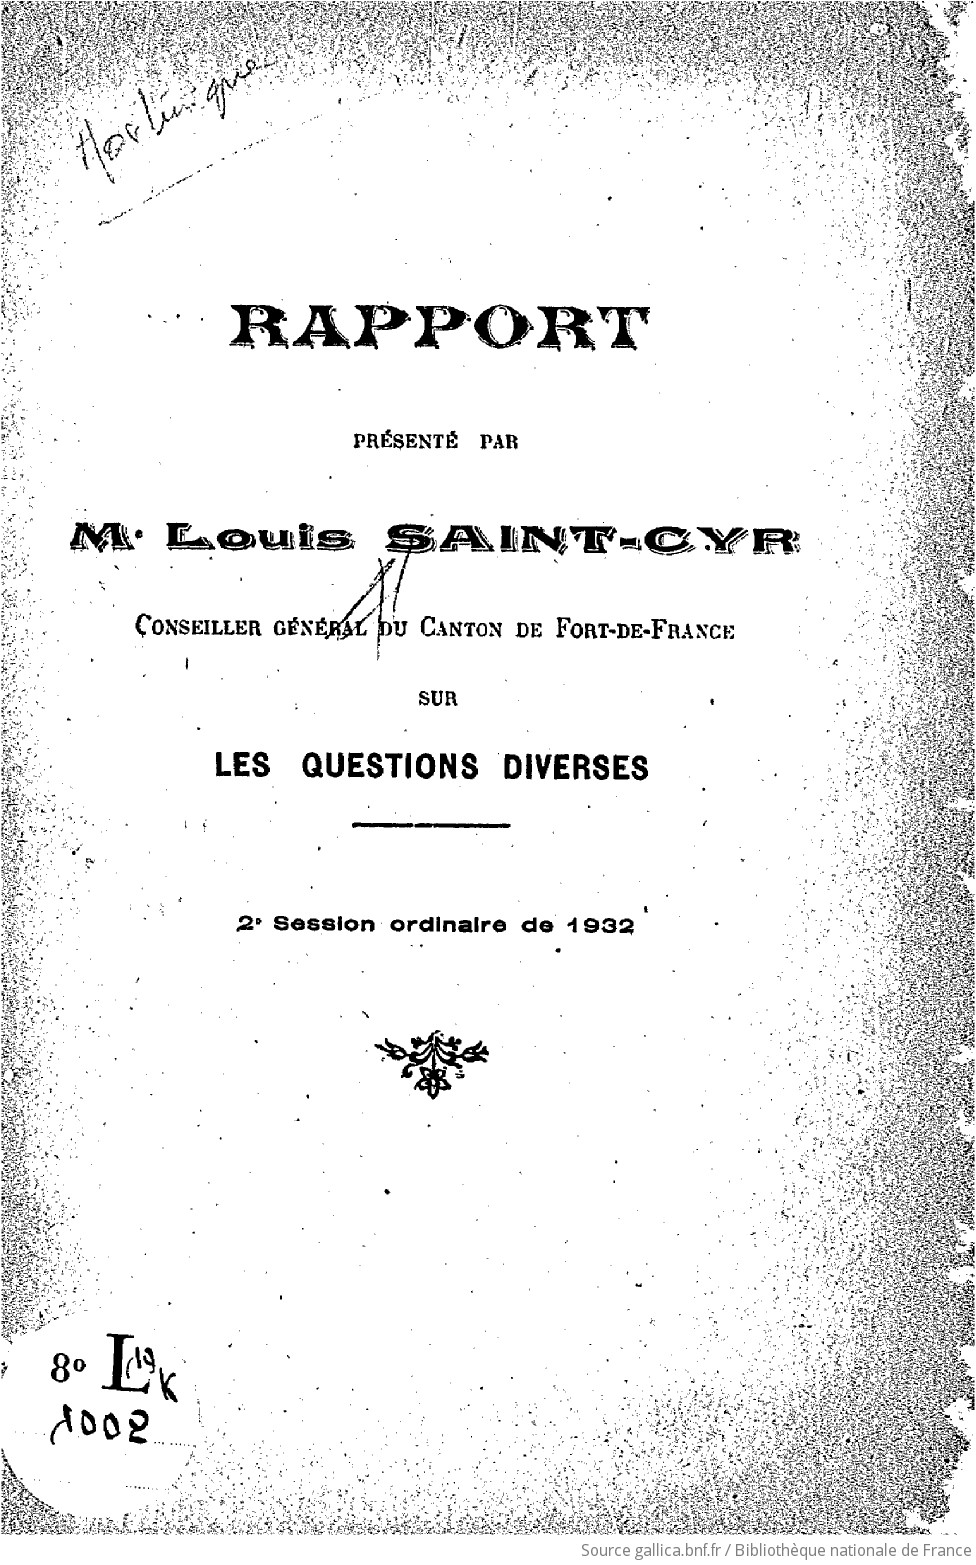 Rapport Presente Par Me Louis Saint Cyr Sur Les Questions Diverses 2eme Session Ordinaire De 1932 Du Conseil General De La Martinique Gallica